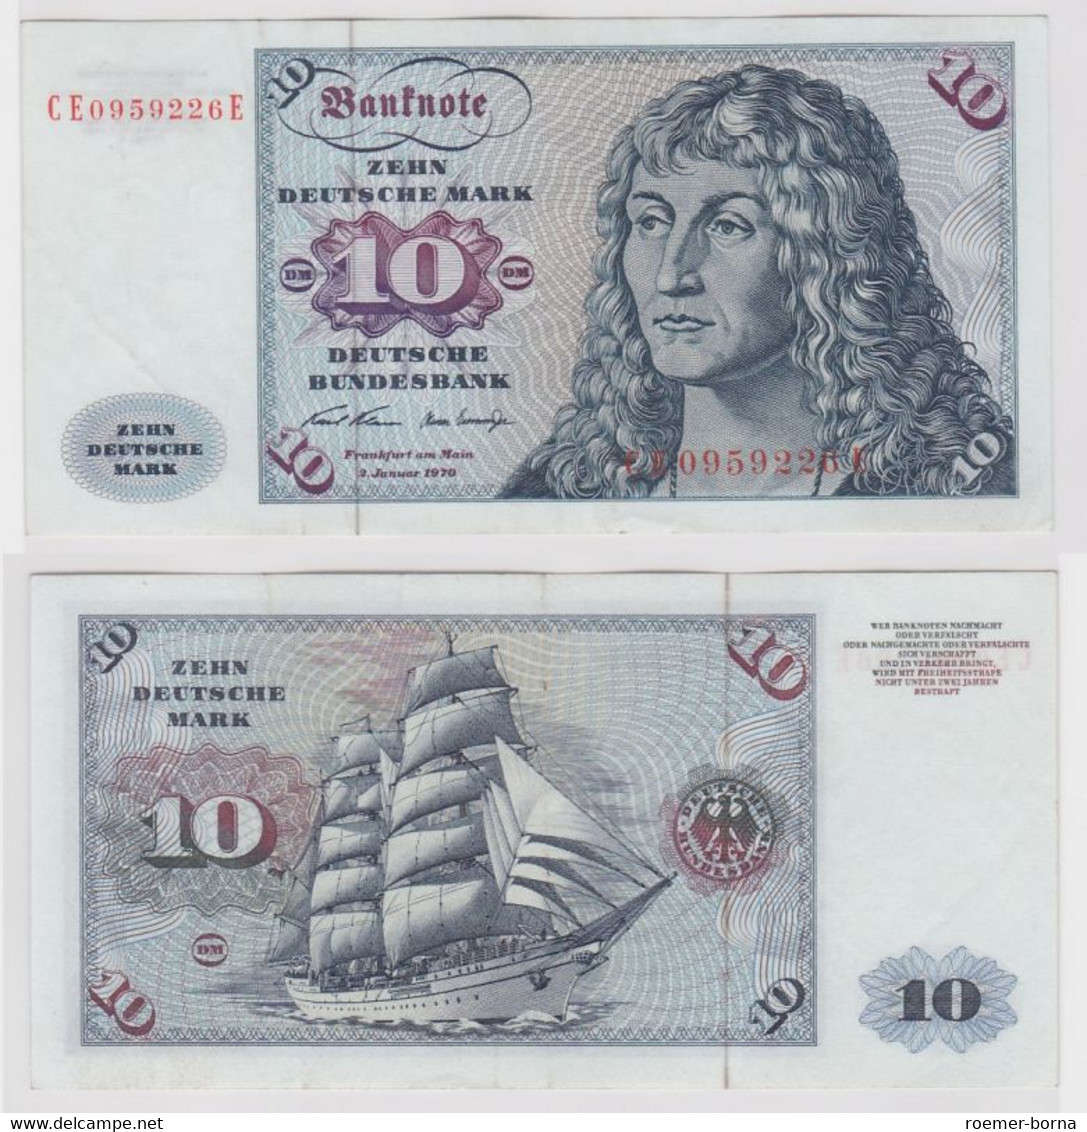 T147573 Banknote 10 DM Deutsche Mark Ro. 270b Schein 2.Jan. 1970 KN CE 0959226 E - 10 Deutsche Mark